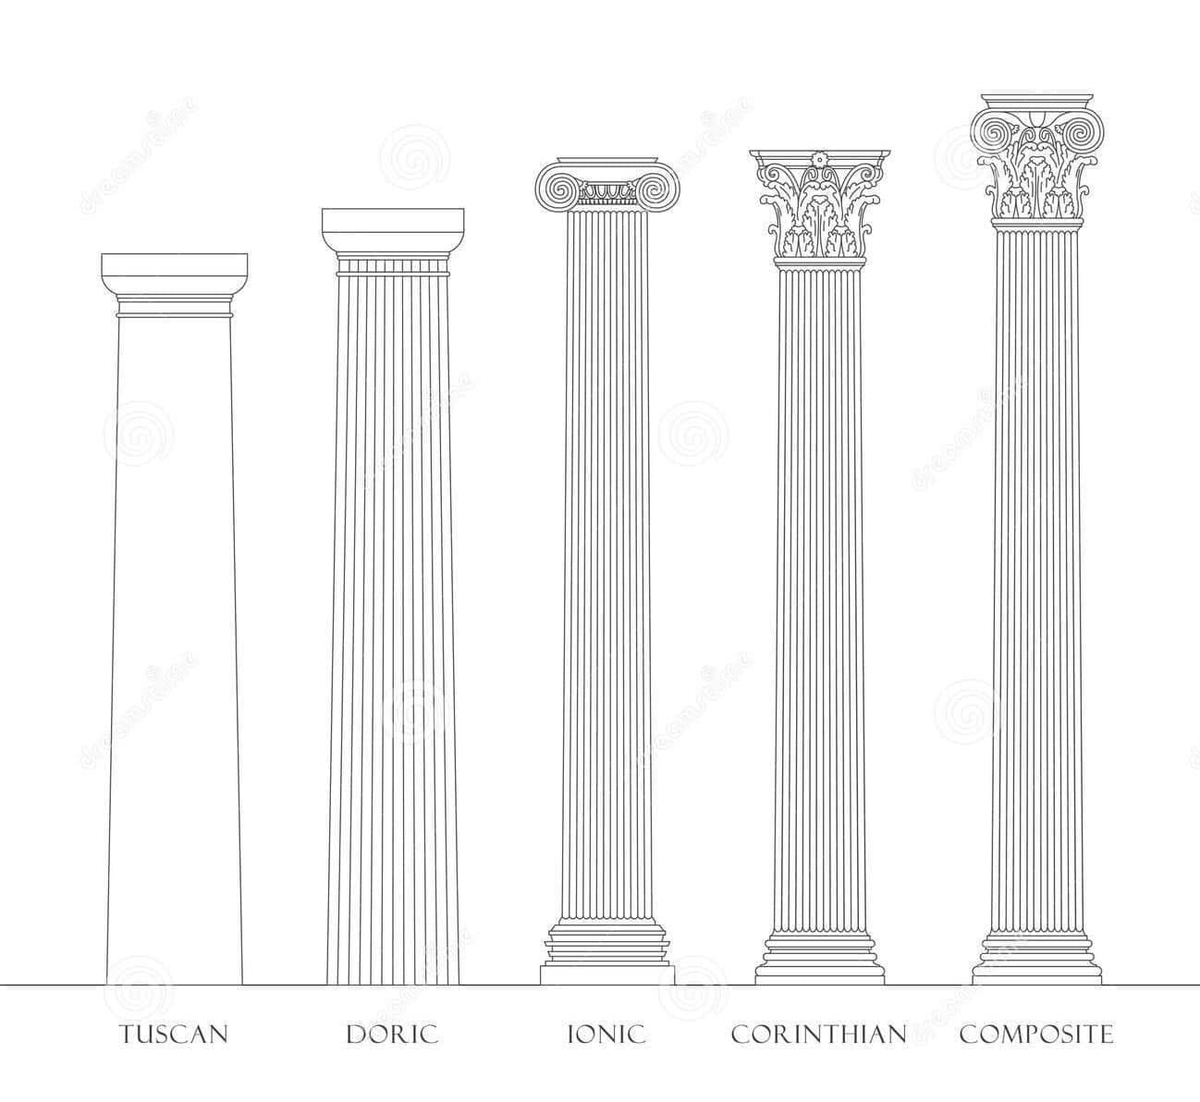 Los 5 ordenes de la arquitectura clásica 🏛️